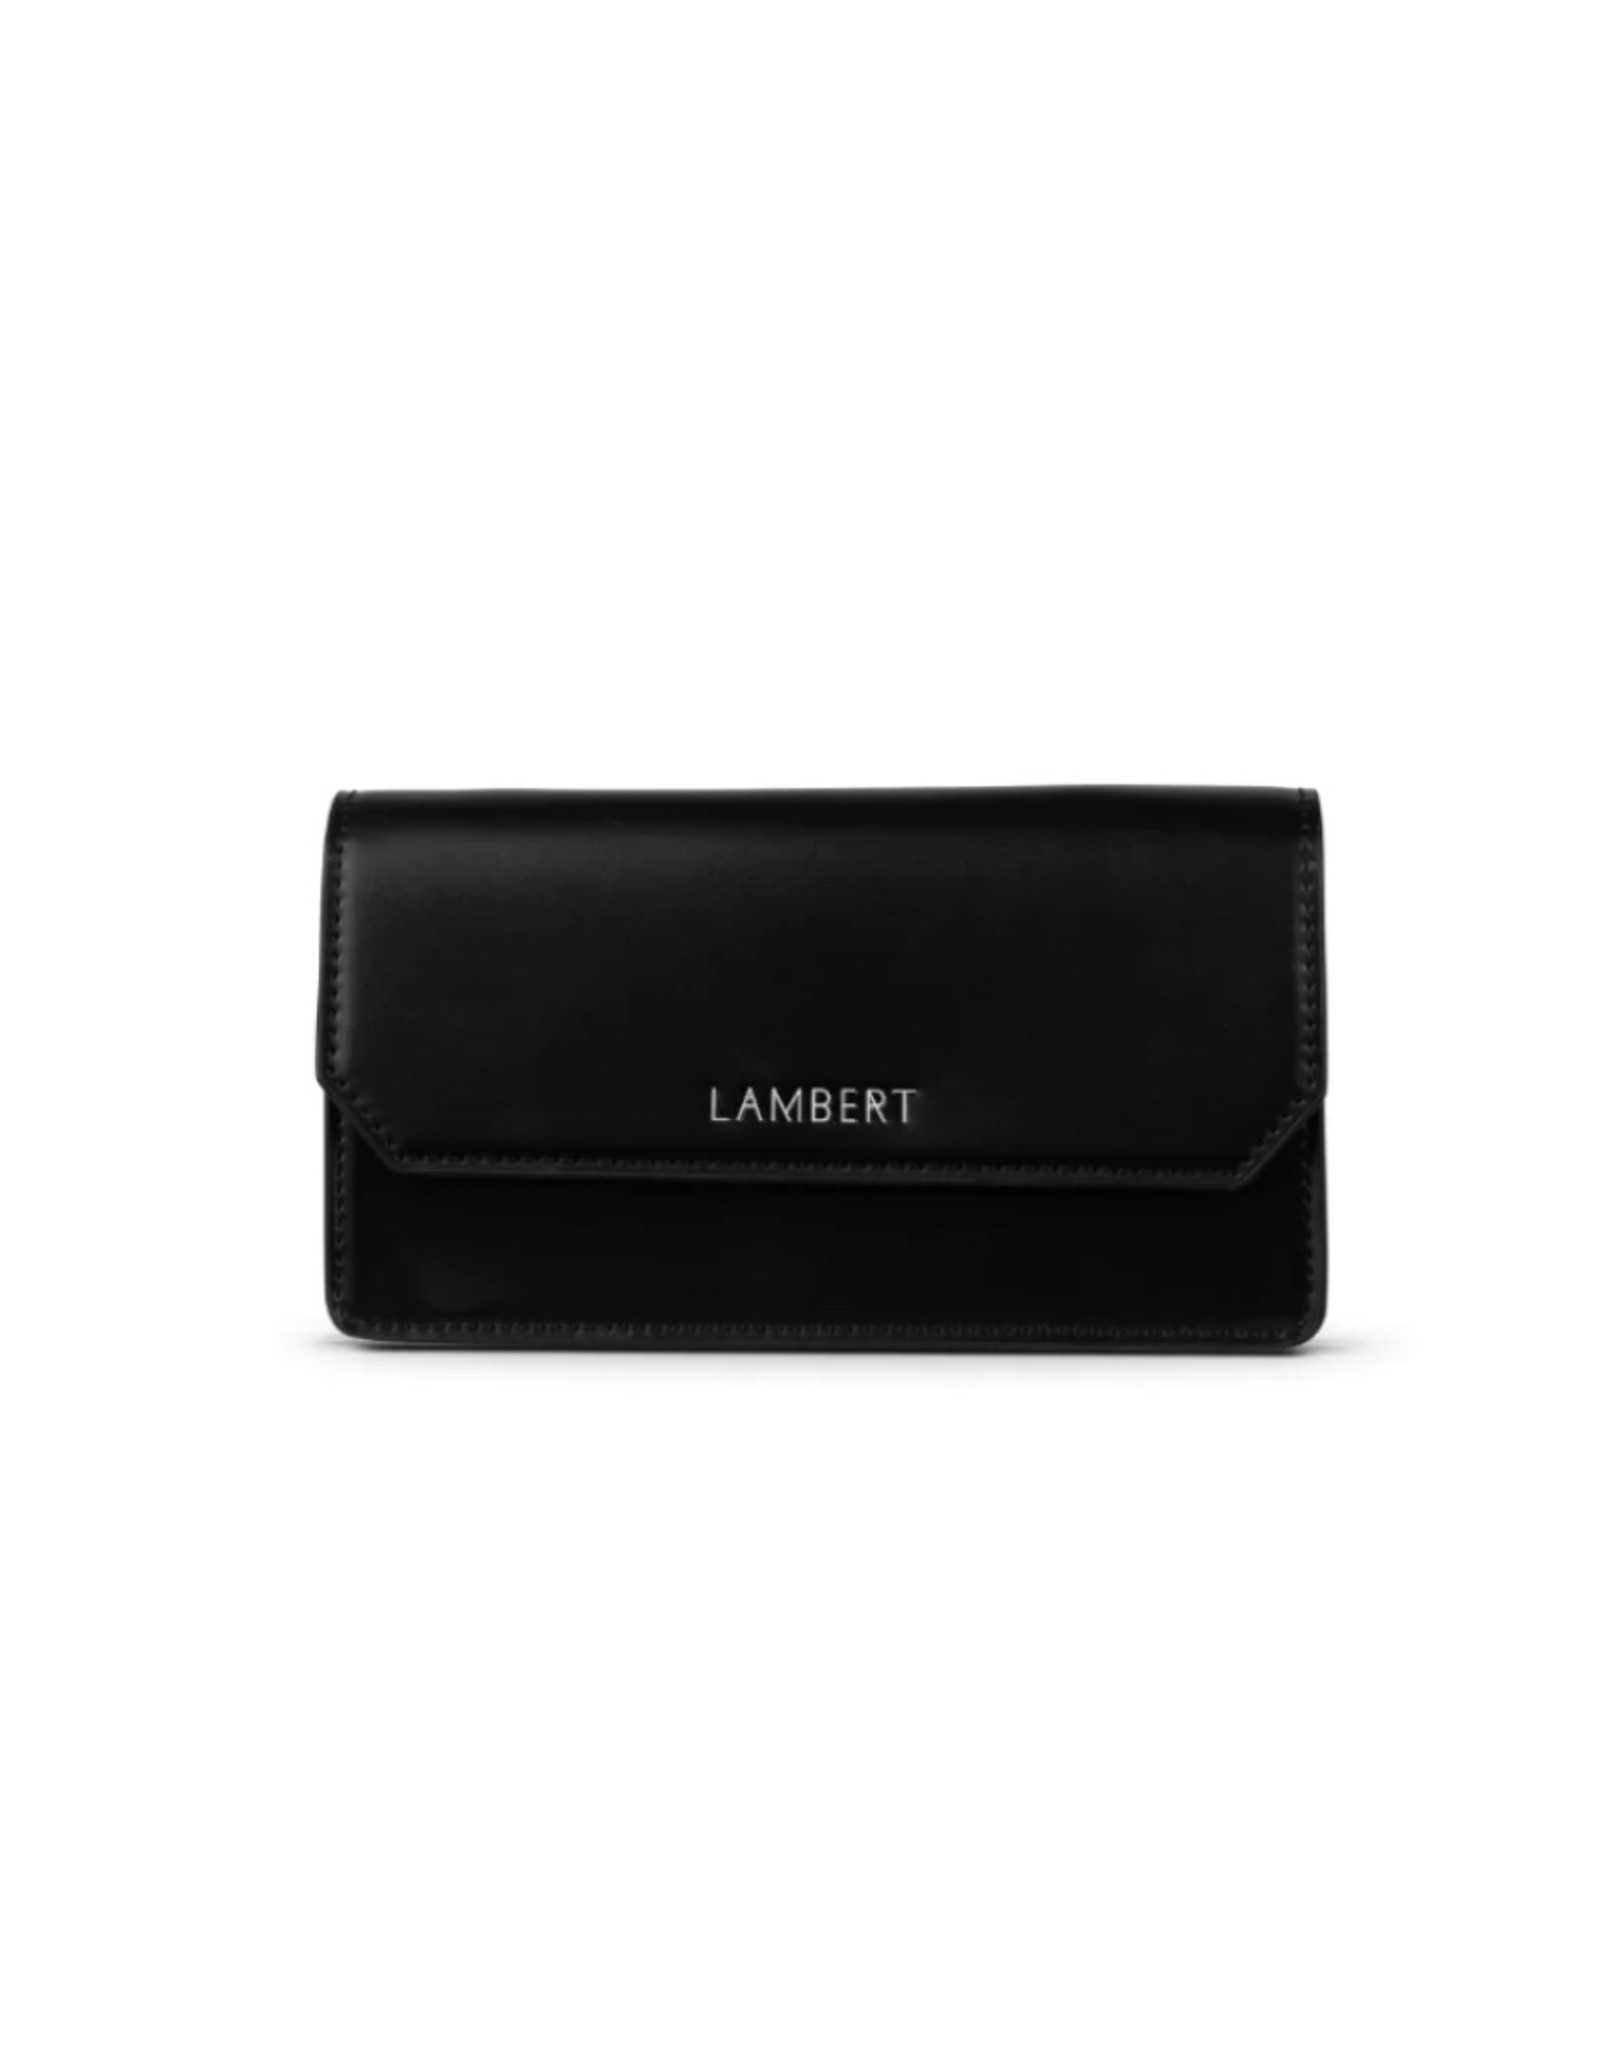 Lambert LAYLA-Portefeuille sur chaîne en cuir vegan-Noir Brillant